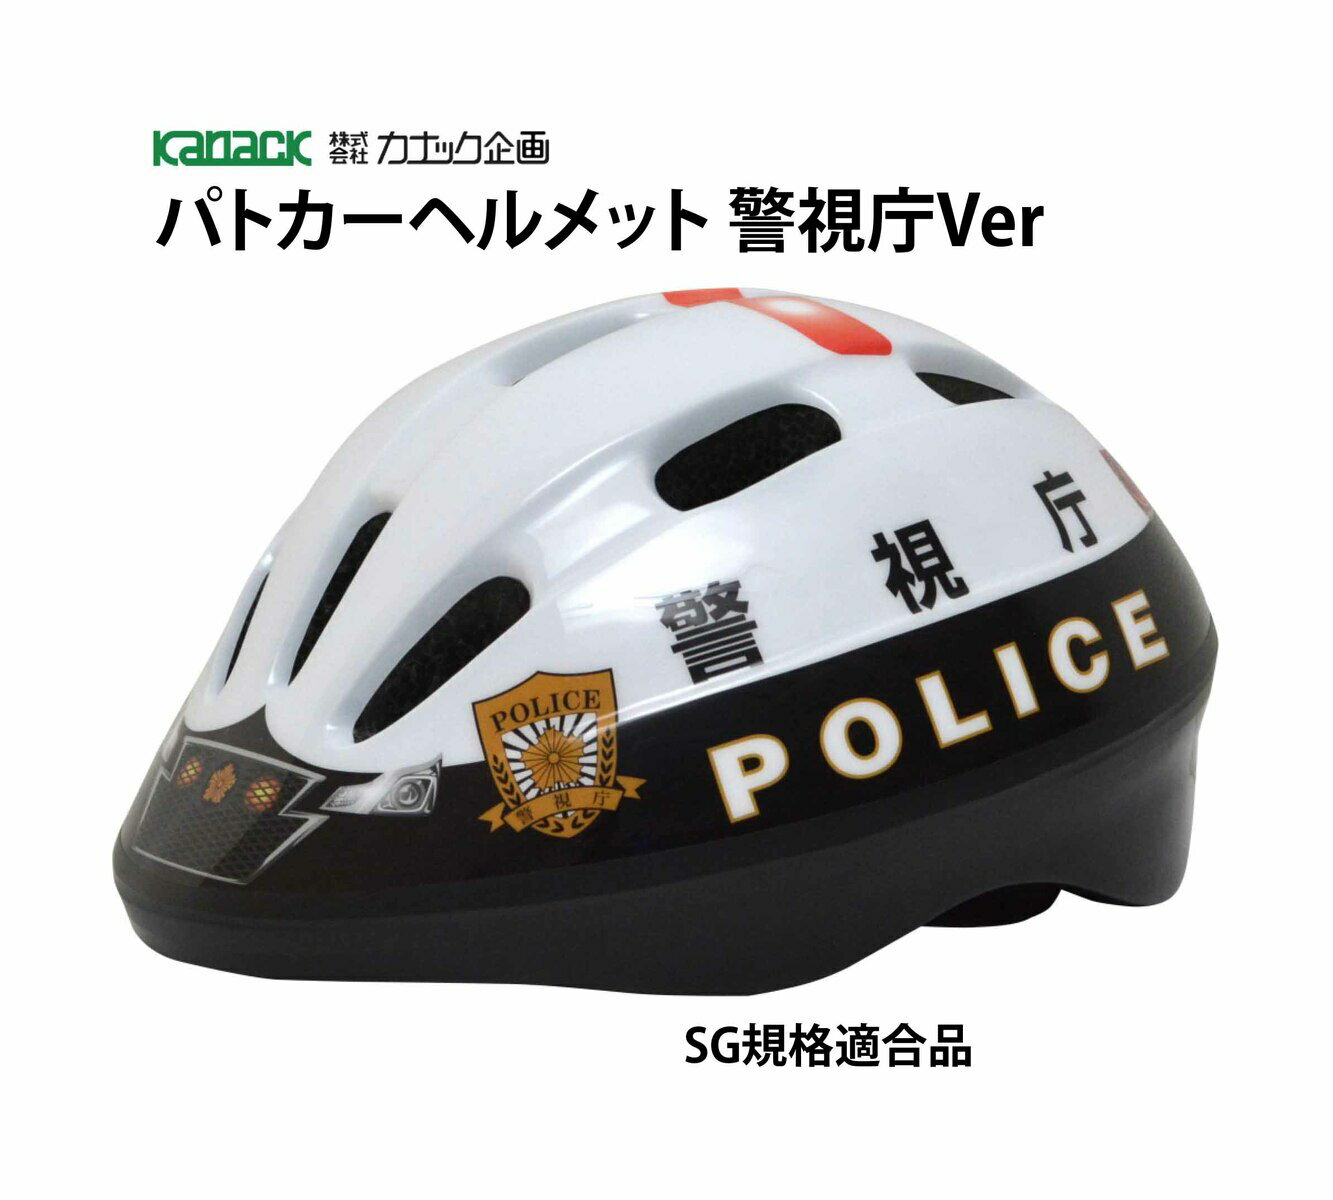 カナック企画 ヘルメット SG規格合格品 自転車 子供 子供用ヘルメット パトカー 警察 パトカーヘルメット 警視庁Ver